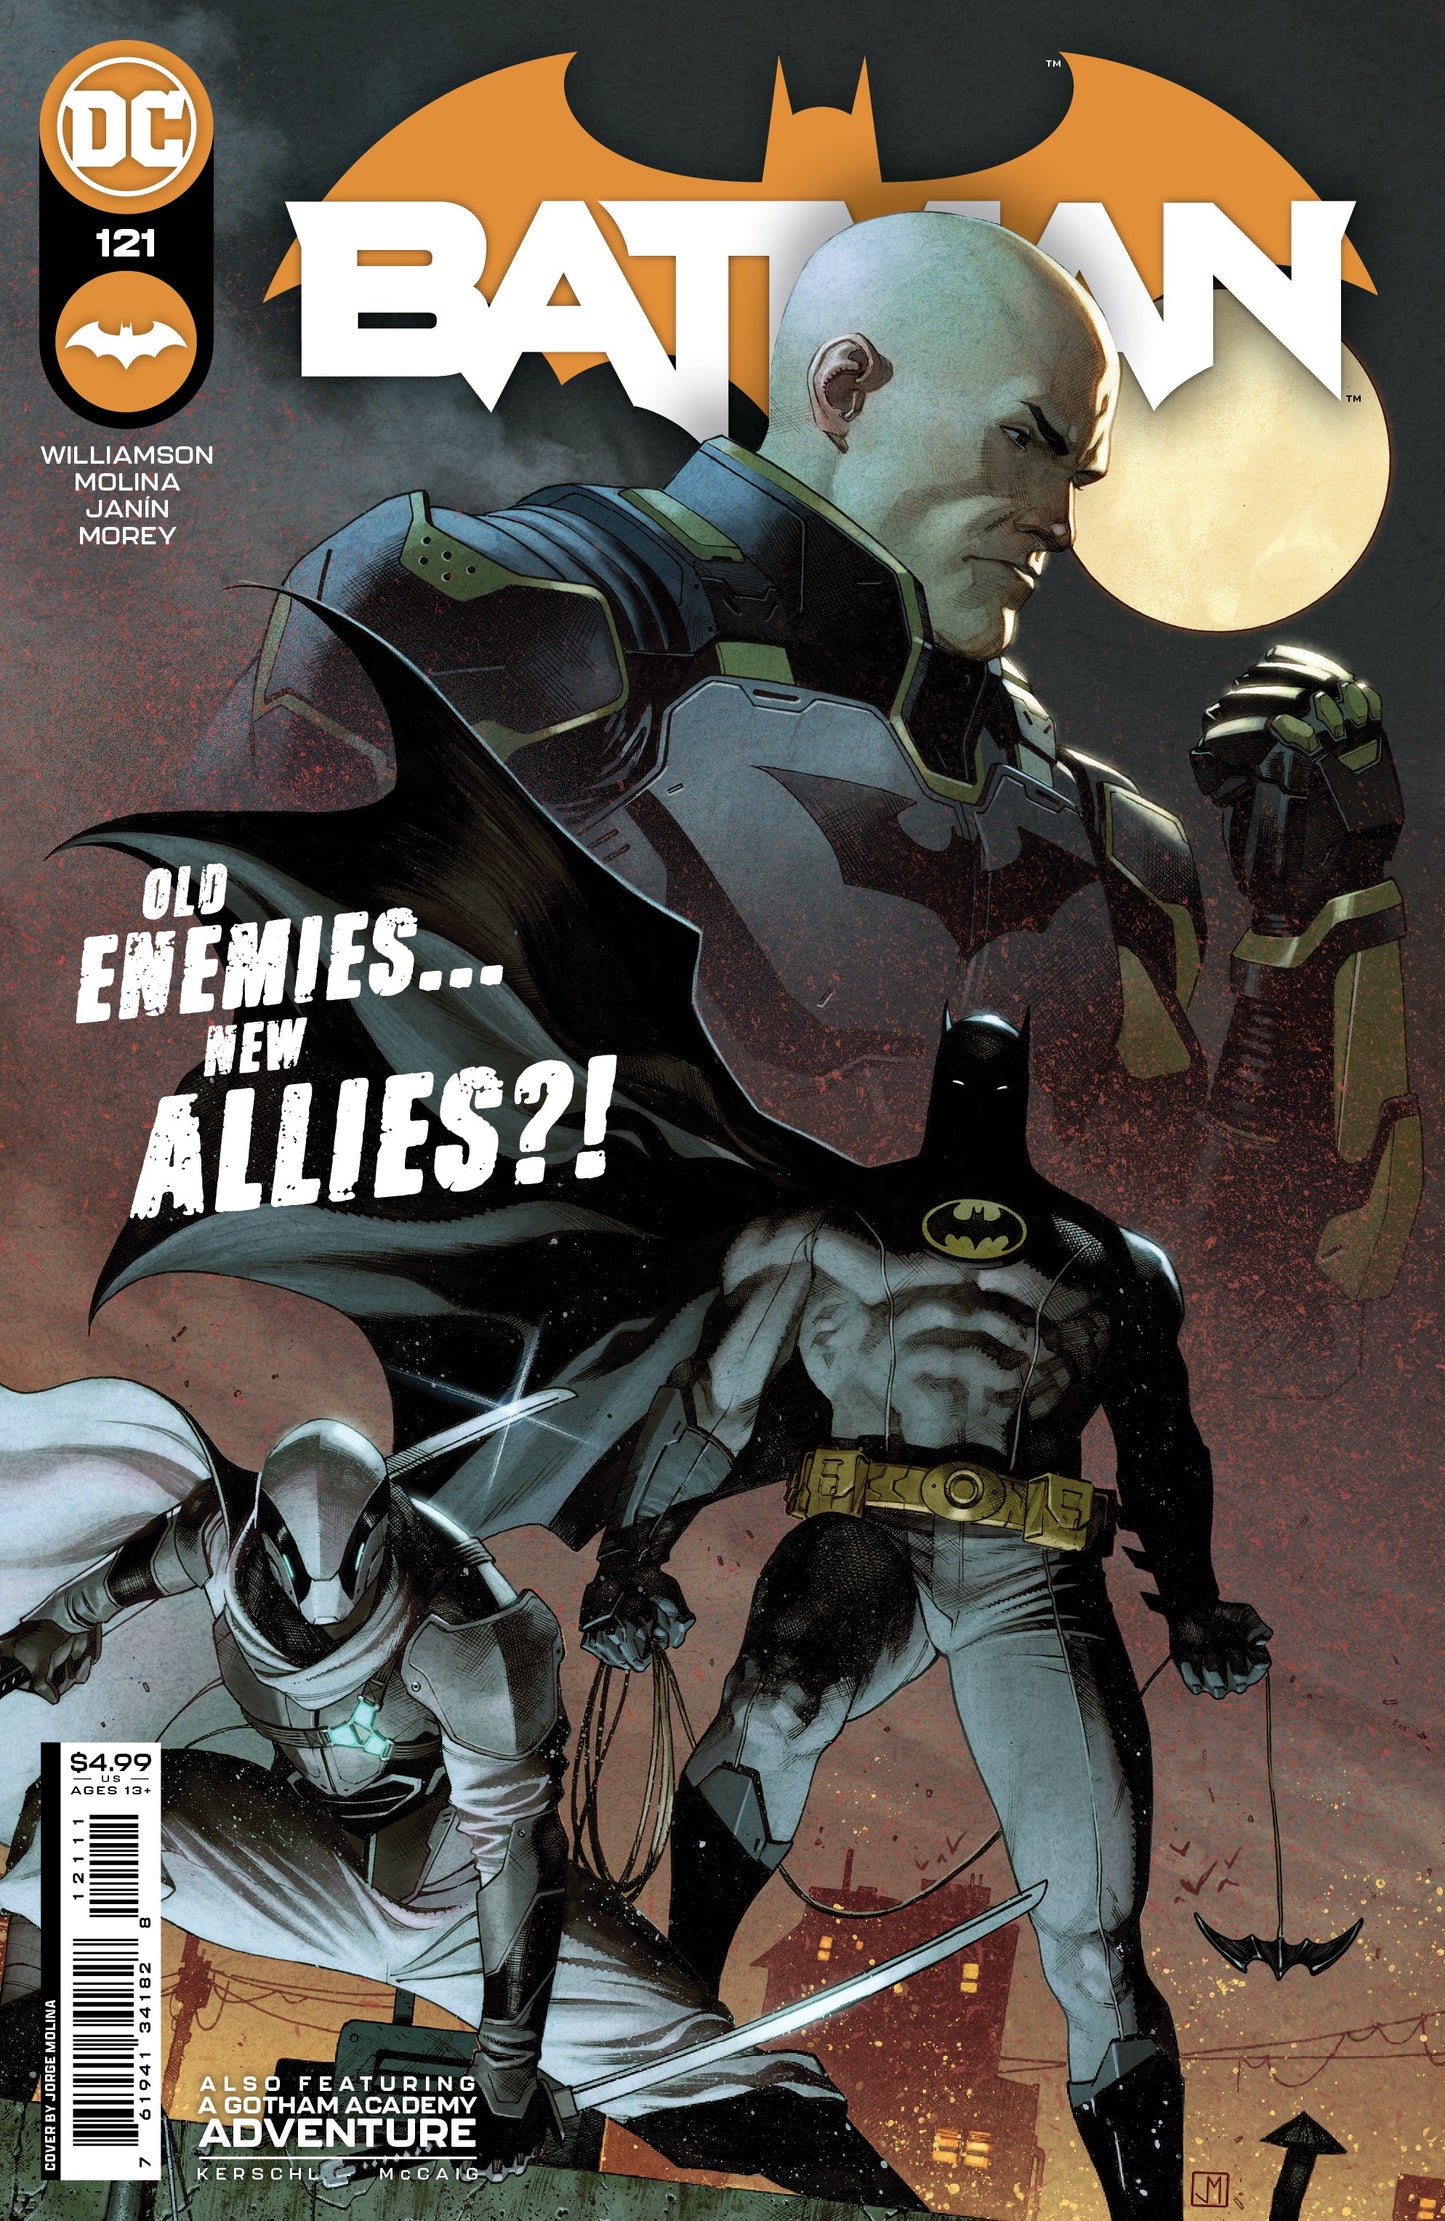 BATMAN #121 COVER A